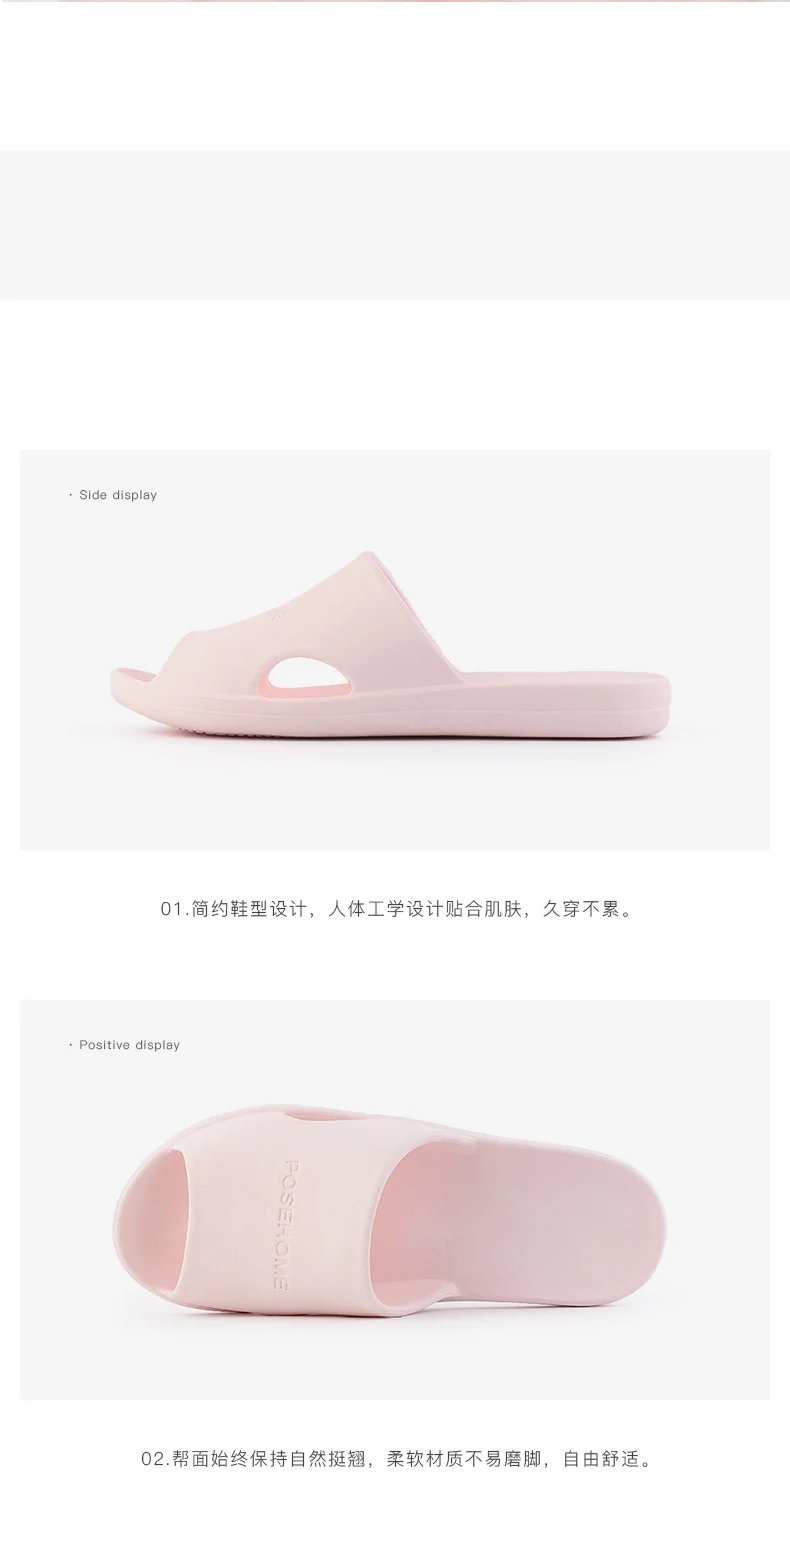 Новинка; домашние тапочки Xiaomi Mijia Youpin; Тапочки для ванной; Мягкие Шлепанцы; женские мужские сандалии; повседневная обувь; Слипоны для мужчин и женщин